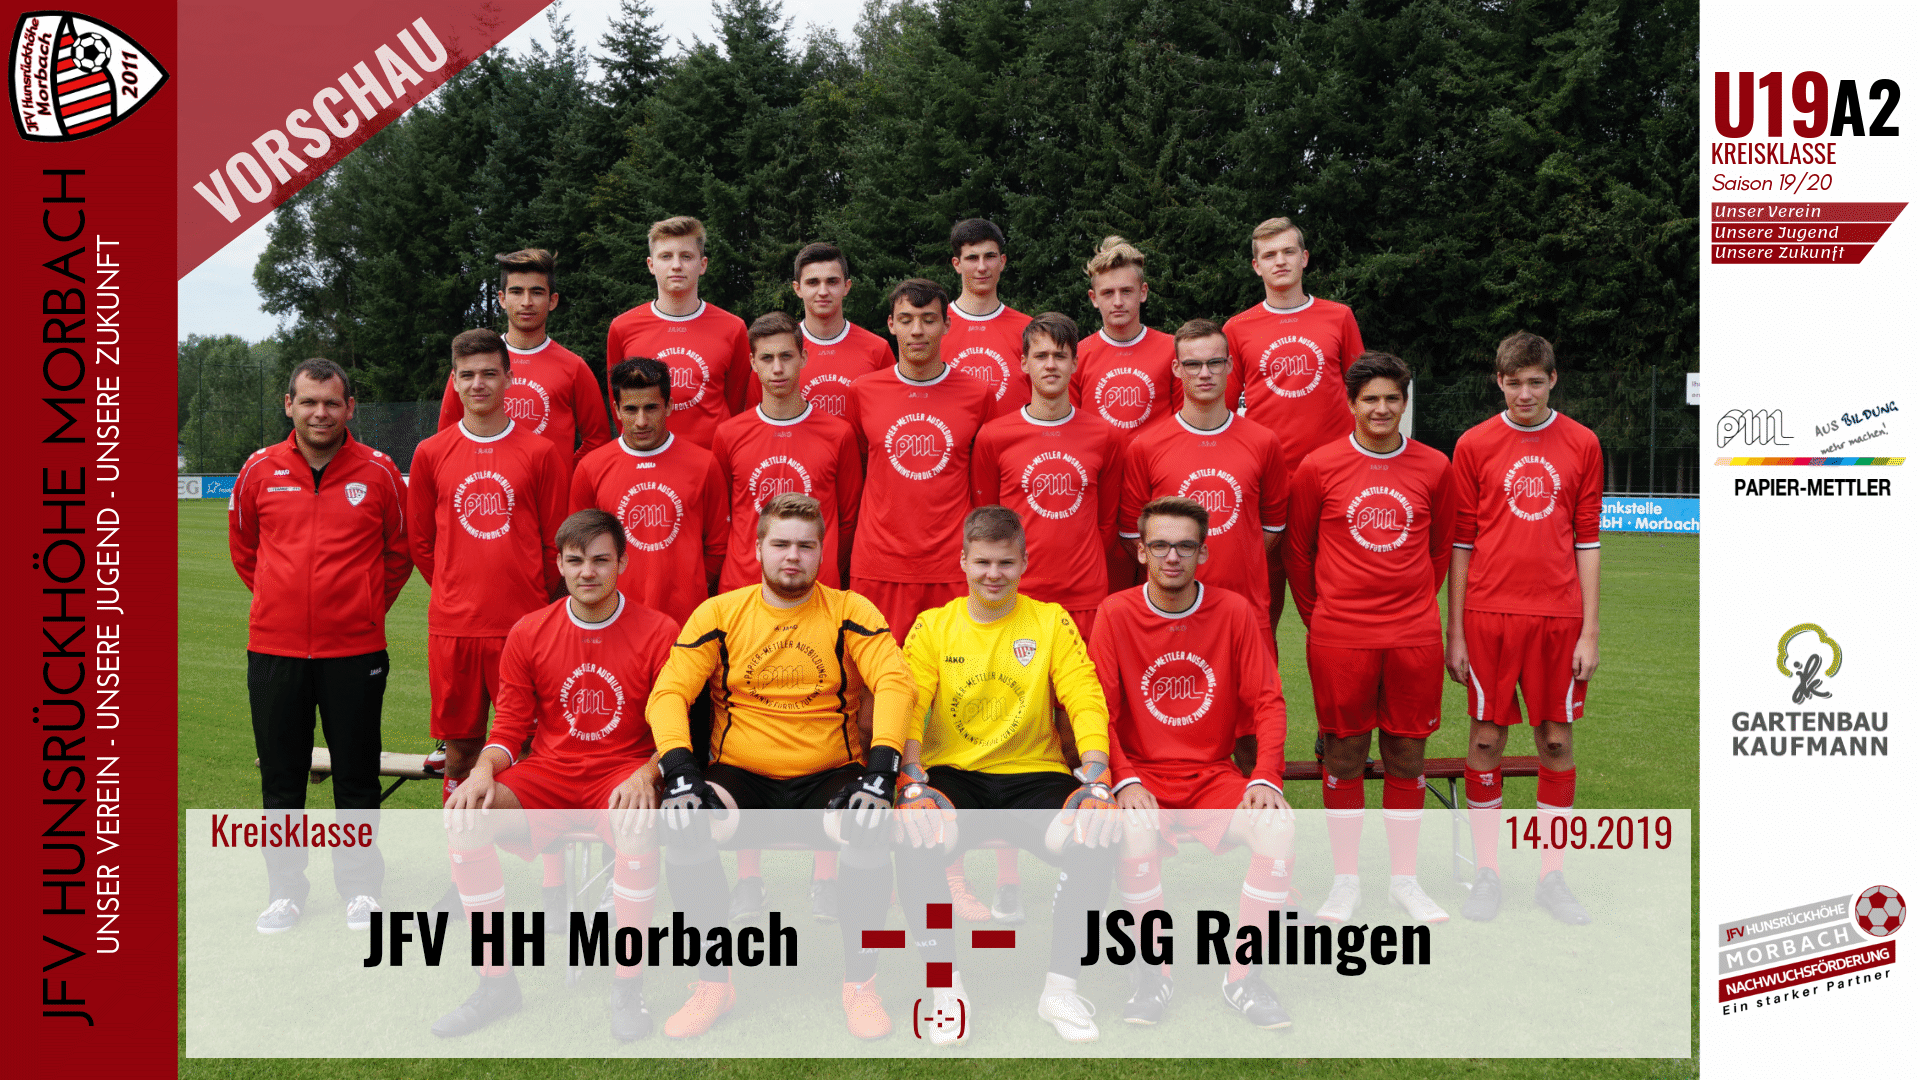 Read more about the article U19 A2: Vorbericht ~ JFV Hunsrückhöhe Morbach – JSG Ralingen ~ Sa., 14.09.19 18:00 Uhr